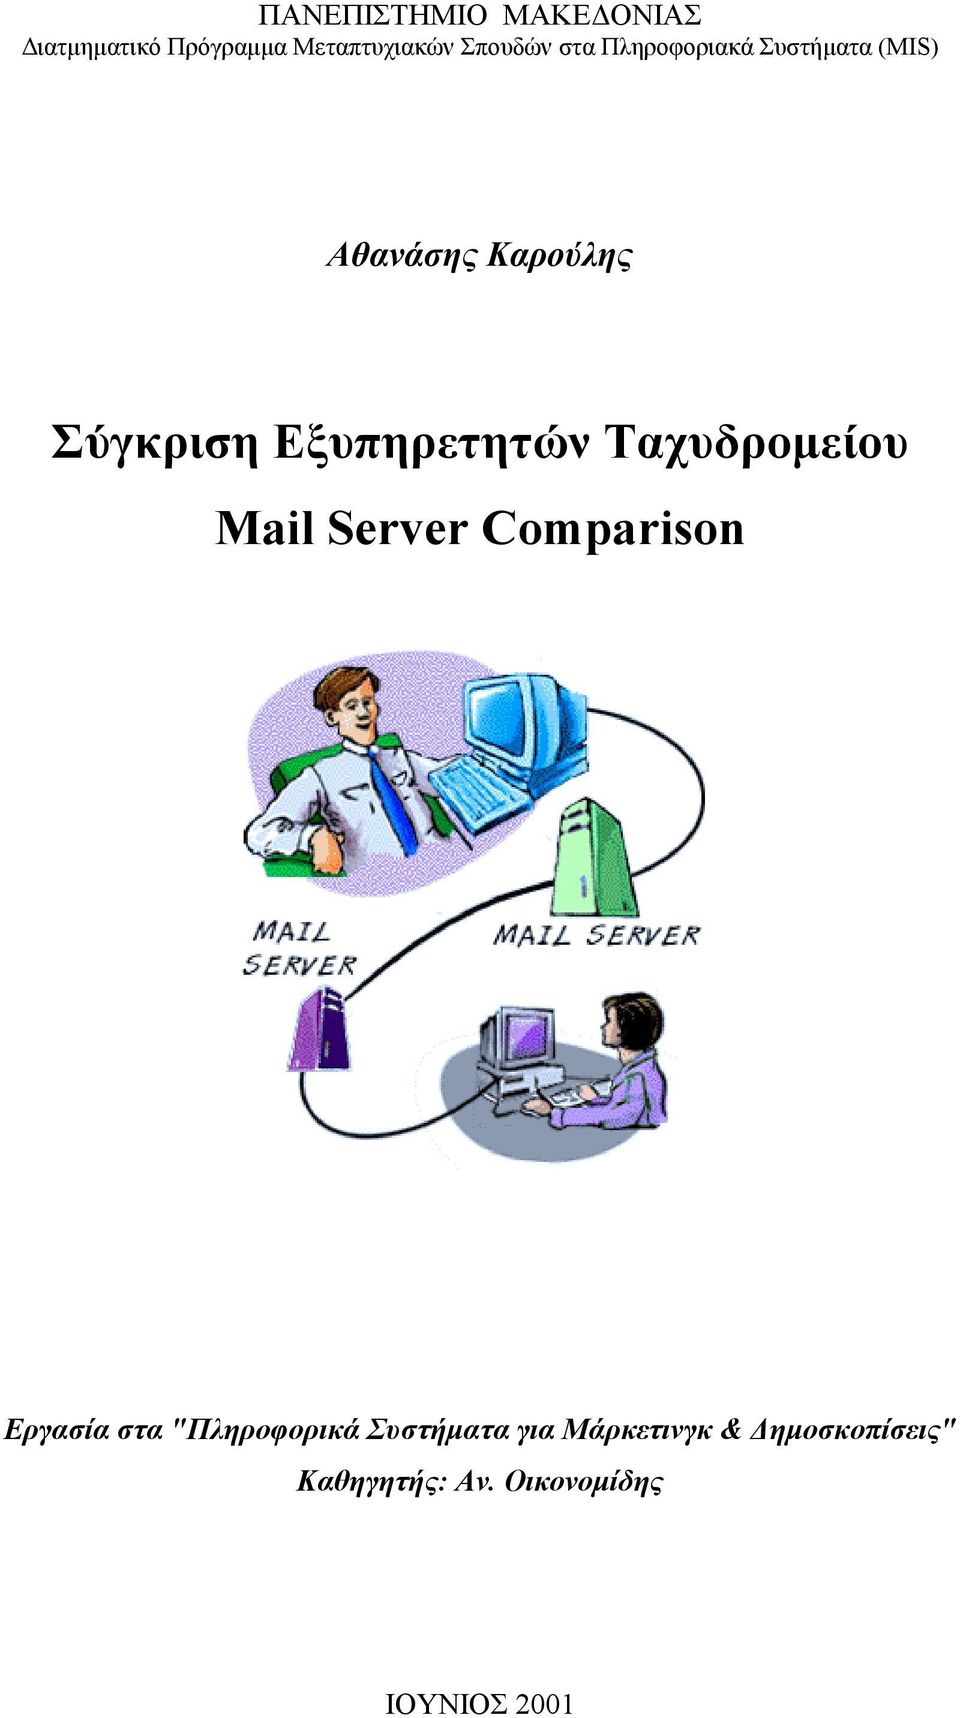 Eξυπηρετητών Tαχυδροµείου Mail Server Comparison Eργασία στα